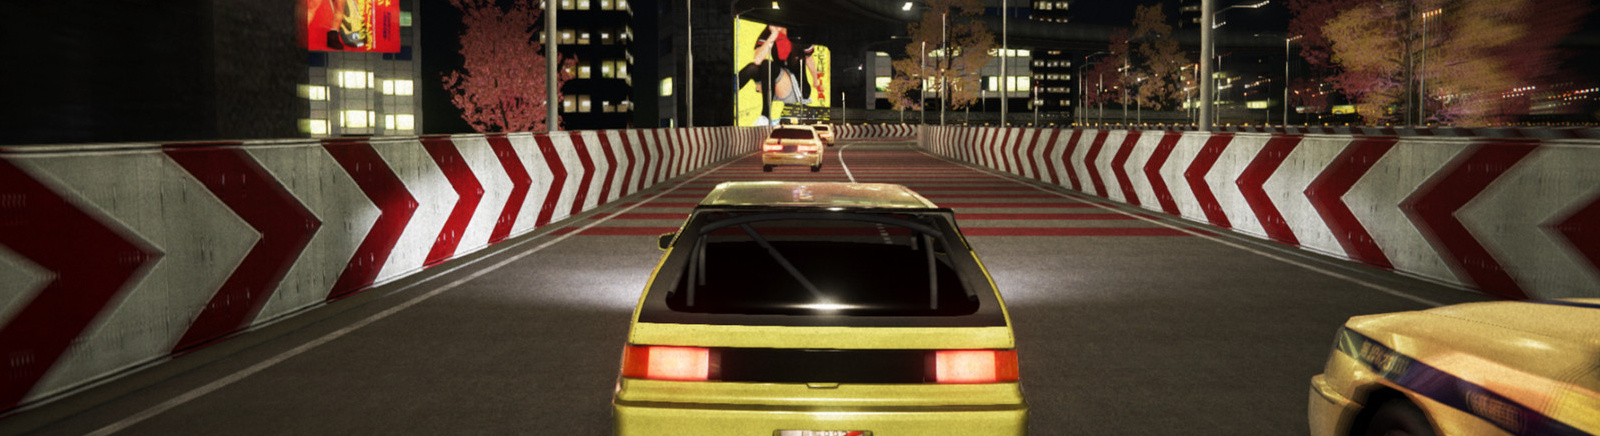 Kanjozoku Game- Car Racing & Highway Driving Simulator - Switch 